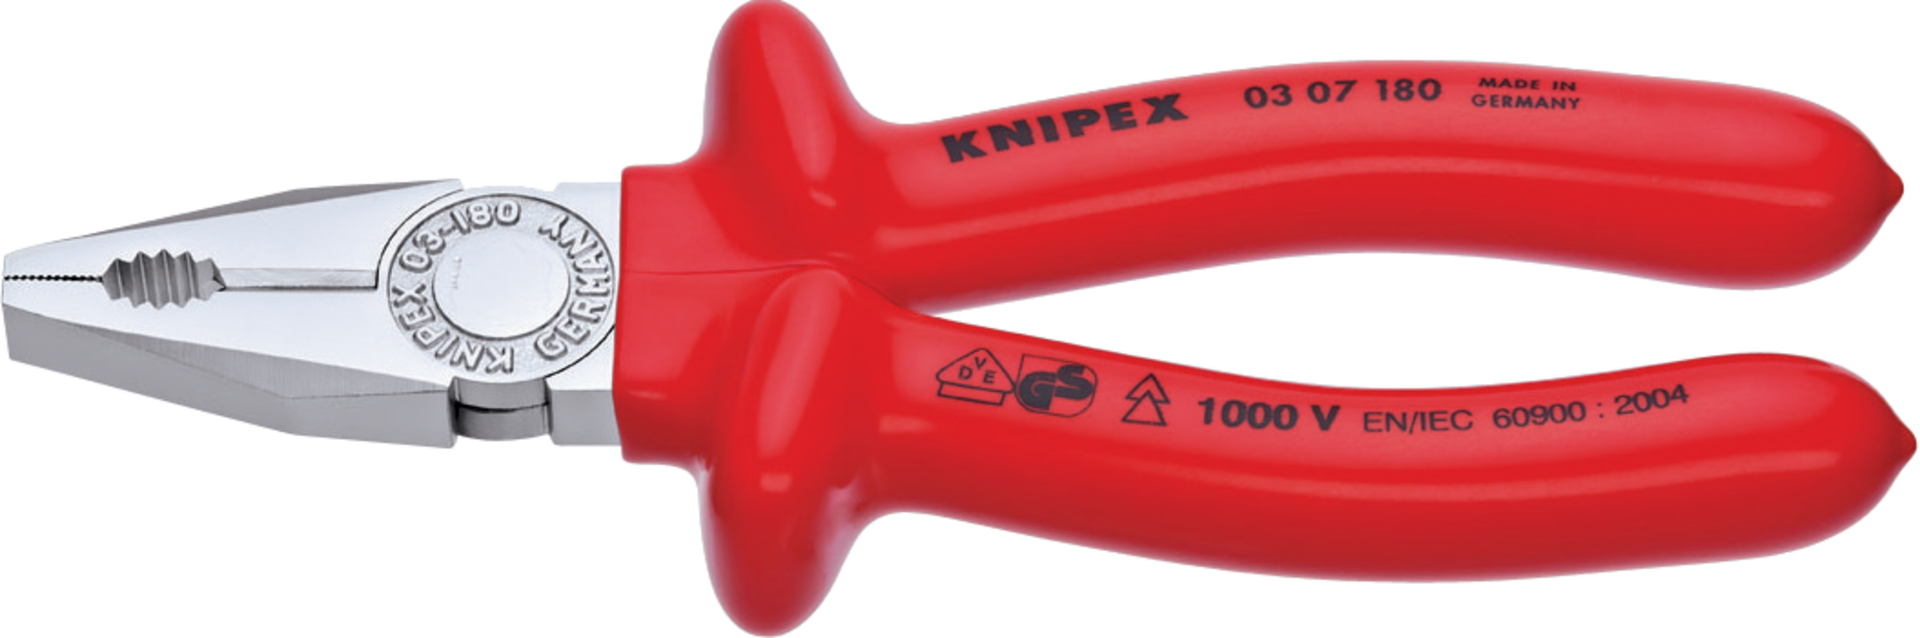 KNIPEX 03 07 180 Kombizange tauchisoliert, VDE verchromt 180 mm